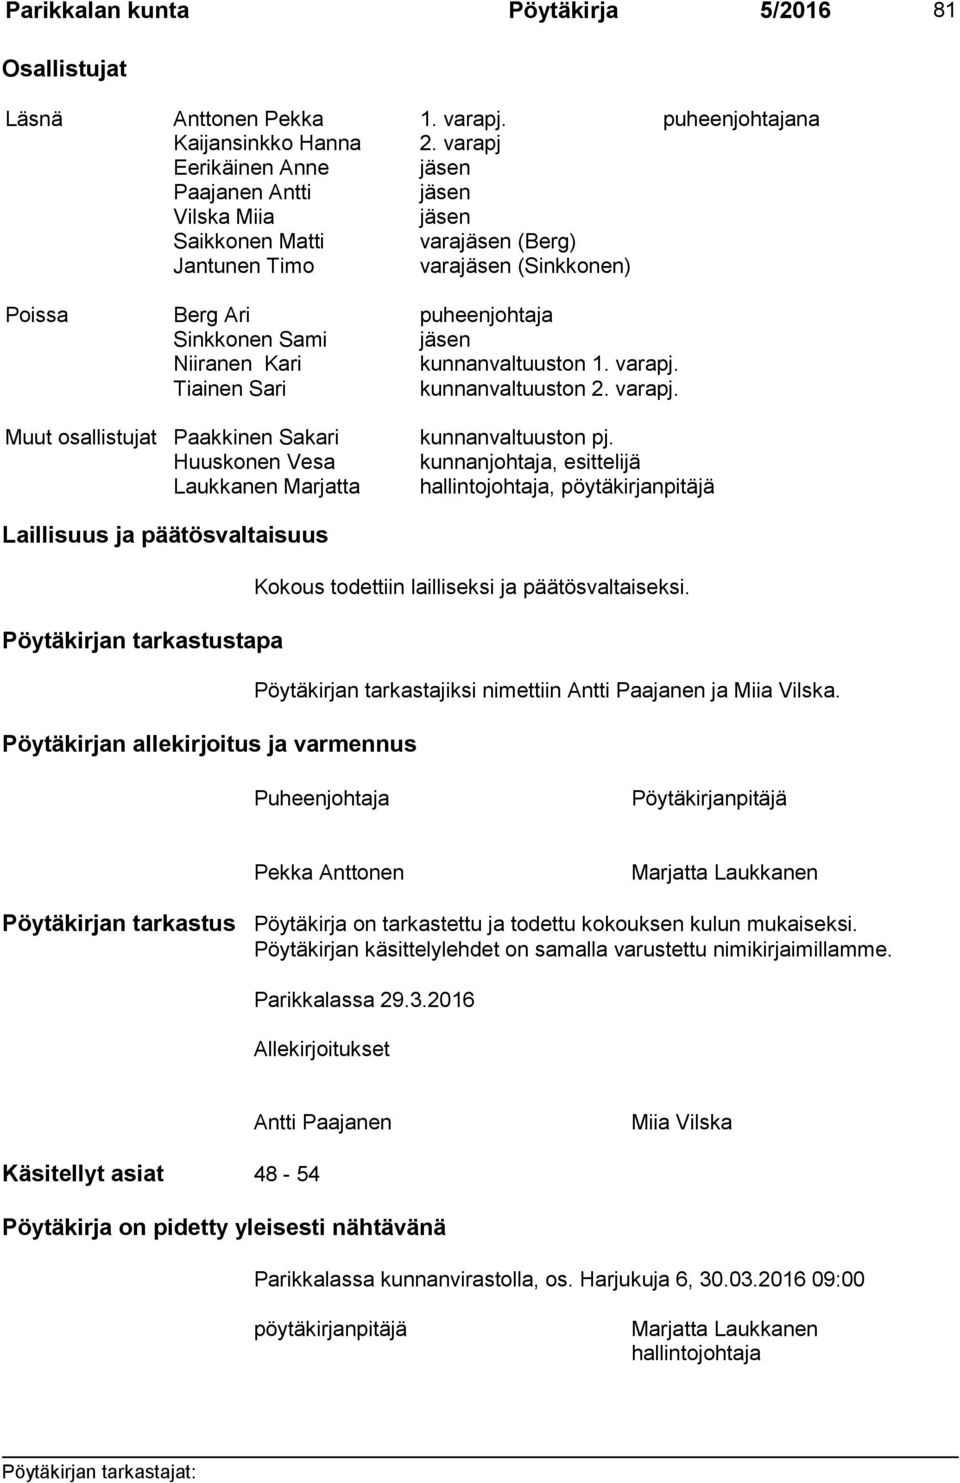 Kari kunnanvaltuuston 1. varapj. Tiainen Sari kunnanvaltuuston 2. varapj. Muut osallistujat Paakkinen Sakari kunnanvaltuuston pj.